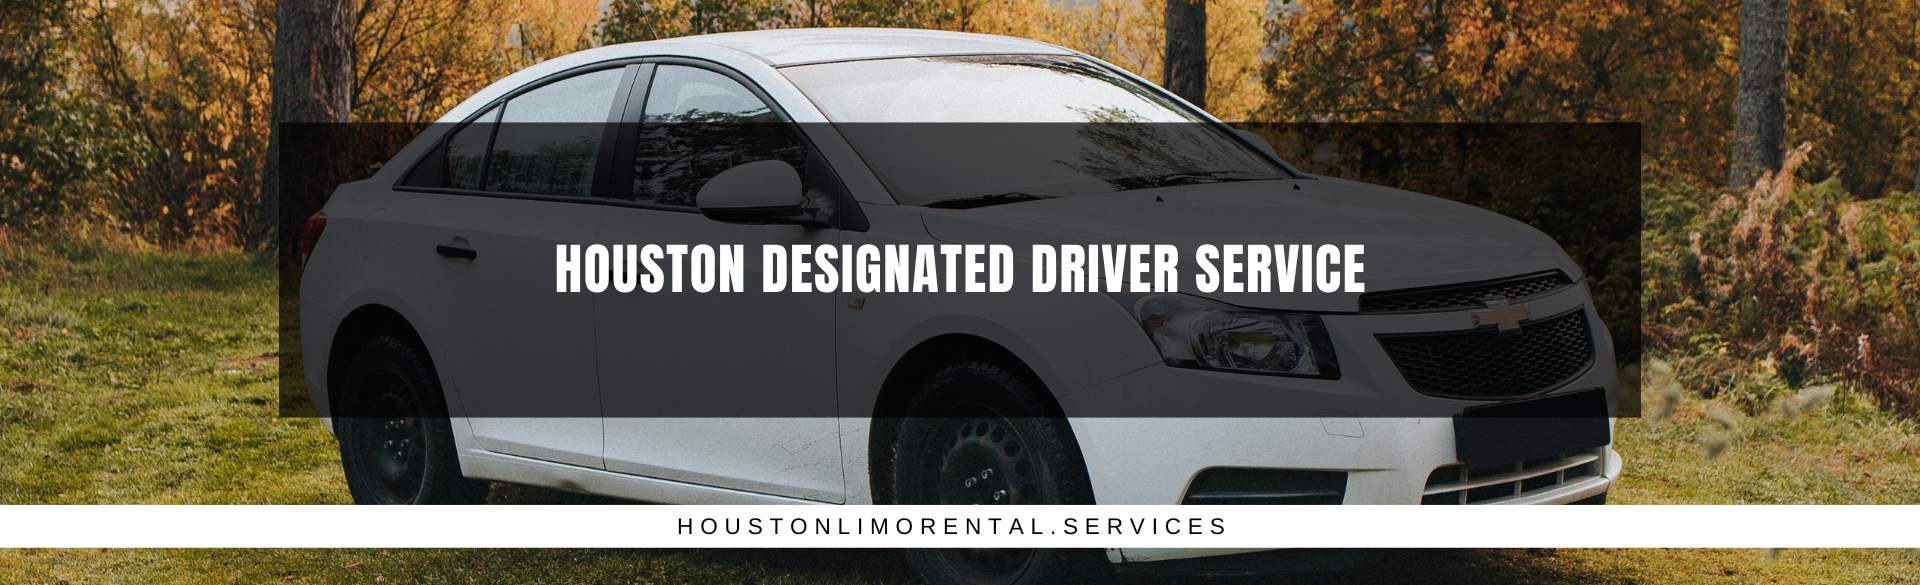 Houston Designated Driver Service